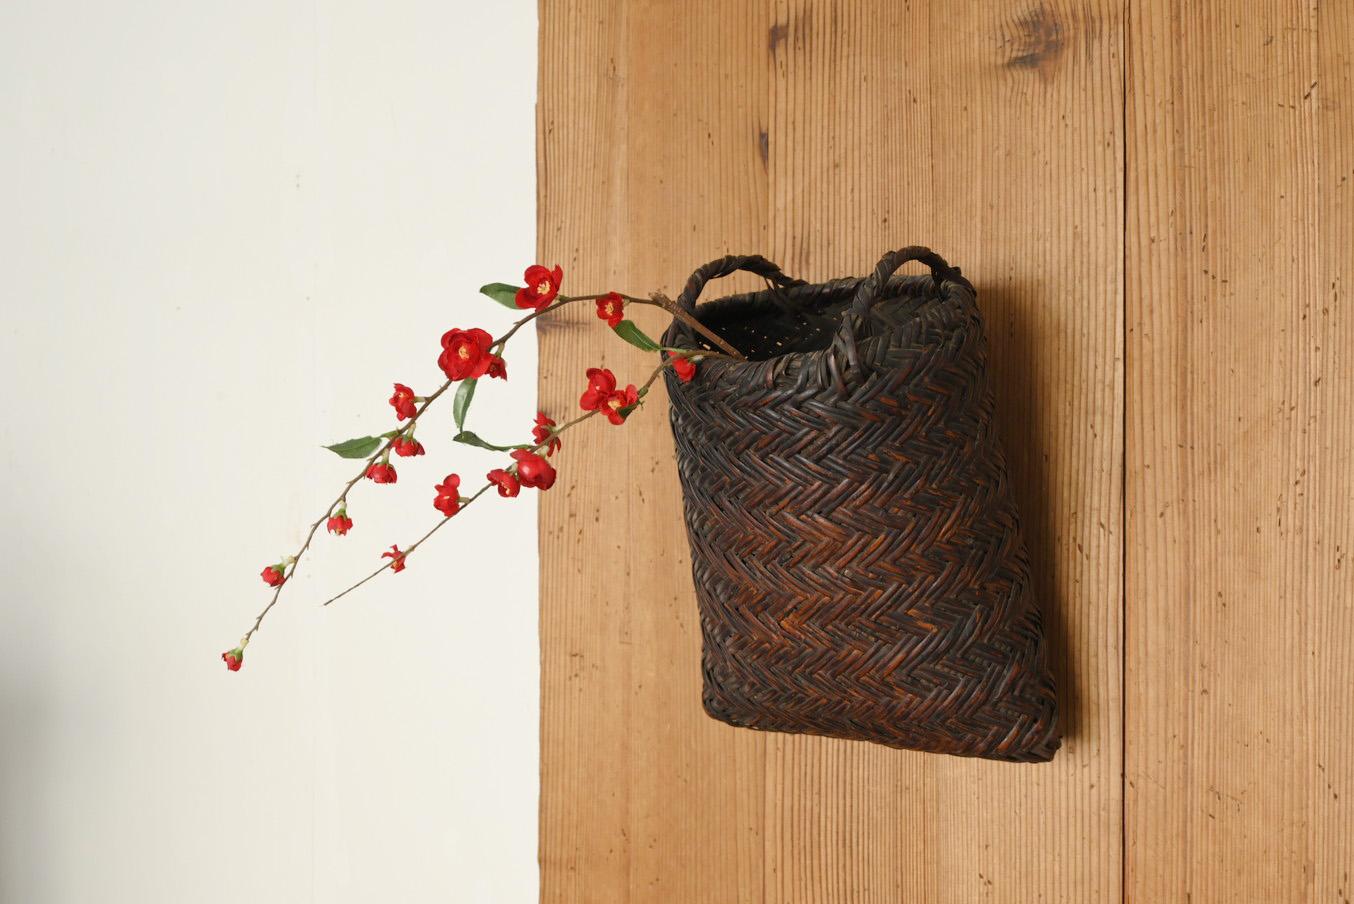 Il s'agit d'un panier en bambou tressé fabriqué au Japon entre les périodes Meiji et Taisho (1868-1920).
Je ne sais pas si les paniers utilisés par les agriculteurs ont été transformés en vases à fleurs ou s'ils ont été conçus à l'origine pour